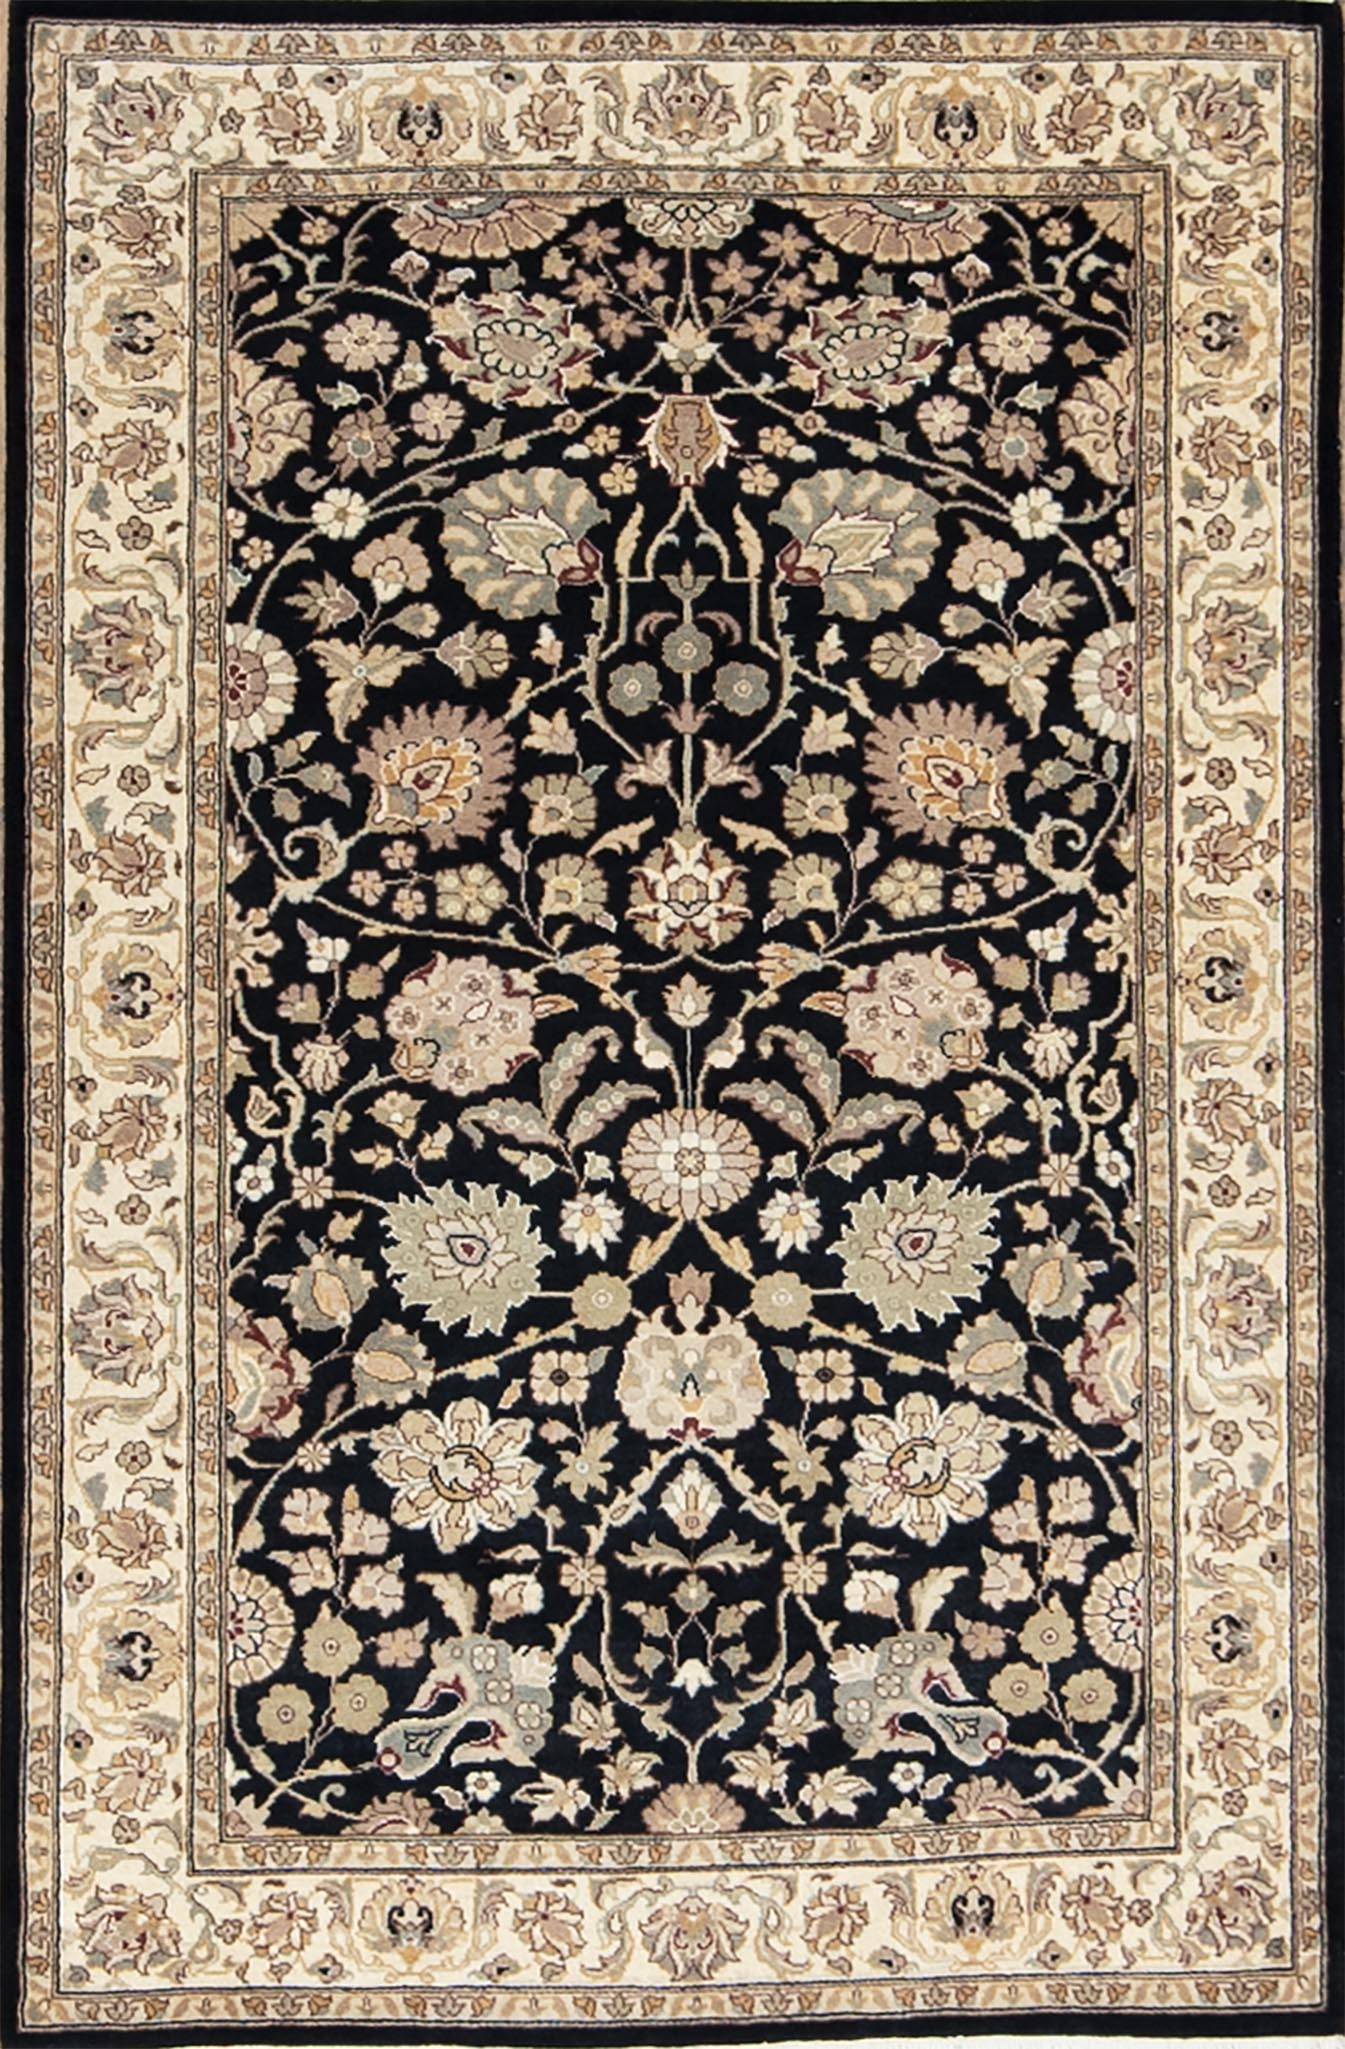 Natural fiber rug, handmade floral Kashan design oriental rug made of wool in black color. Rug size 3.1x5.2.